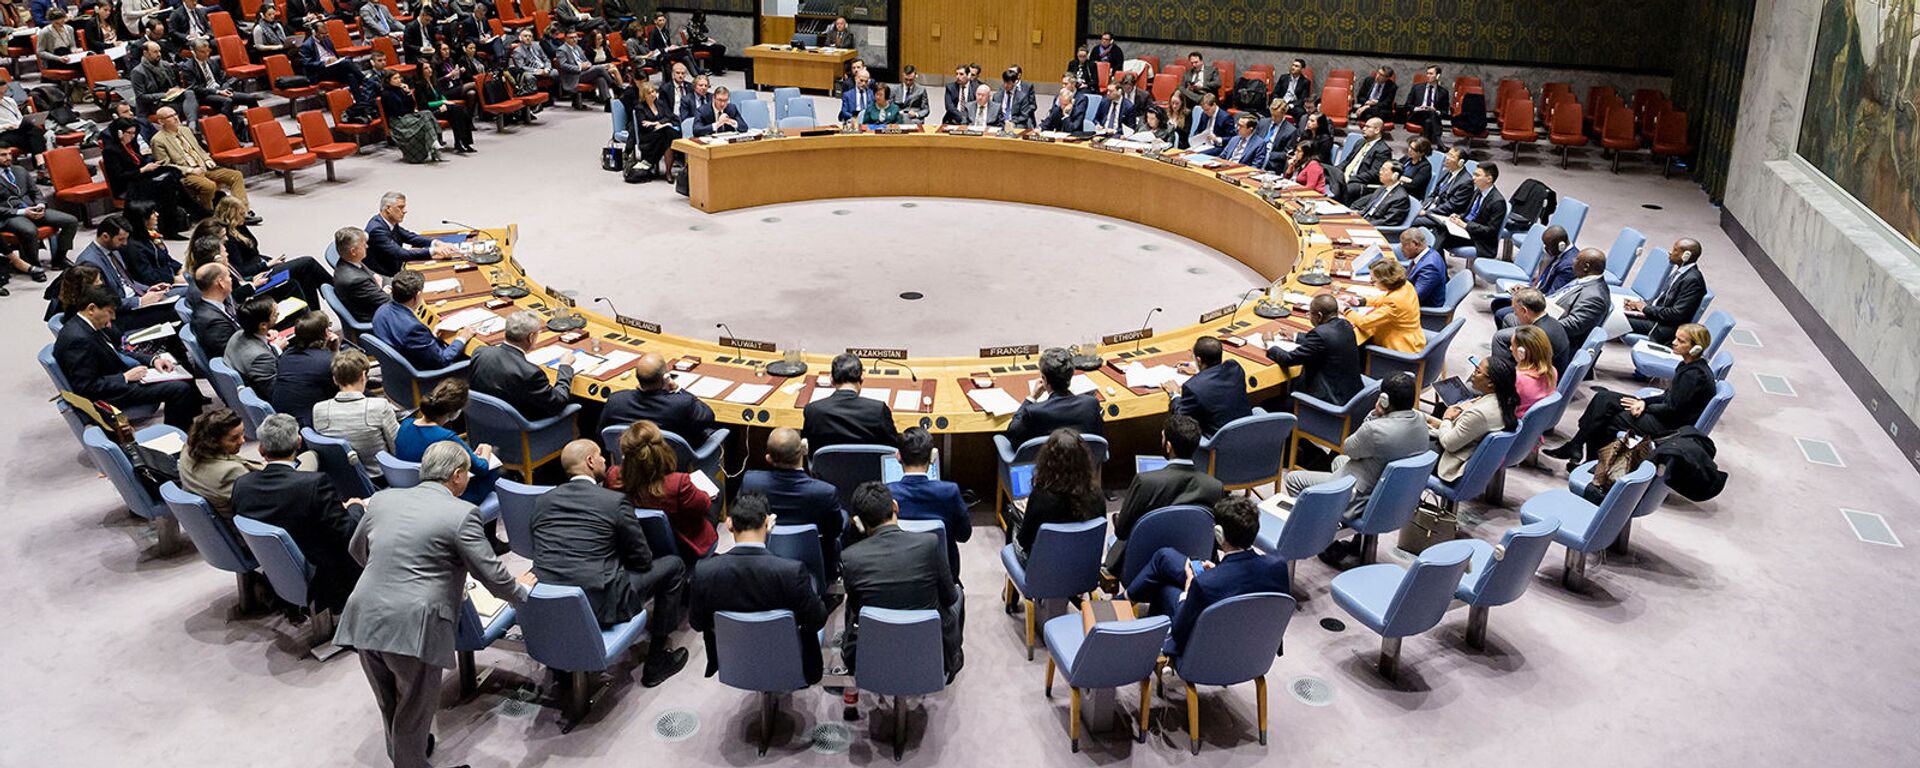 Совет Безопасности ООН рассматривает письменное обращение постоянного представителя Сербии при ООН (17 декабря 2018). Нью-Йорк - Sputnik Армения, 1920, 05.11.2021